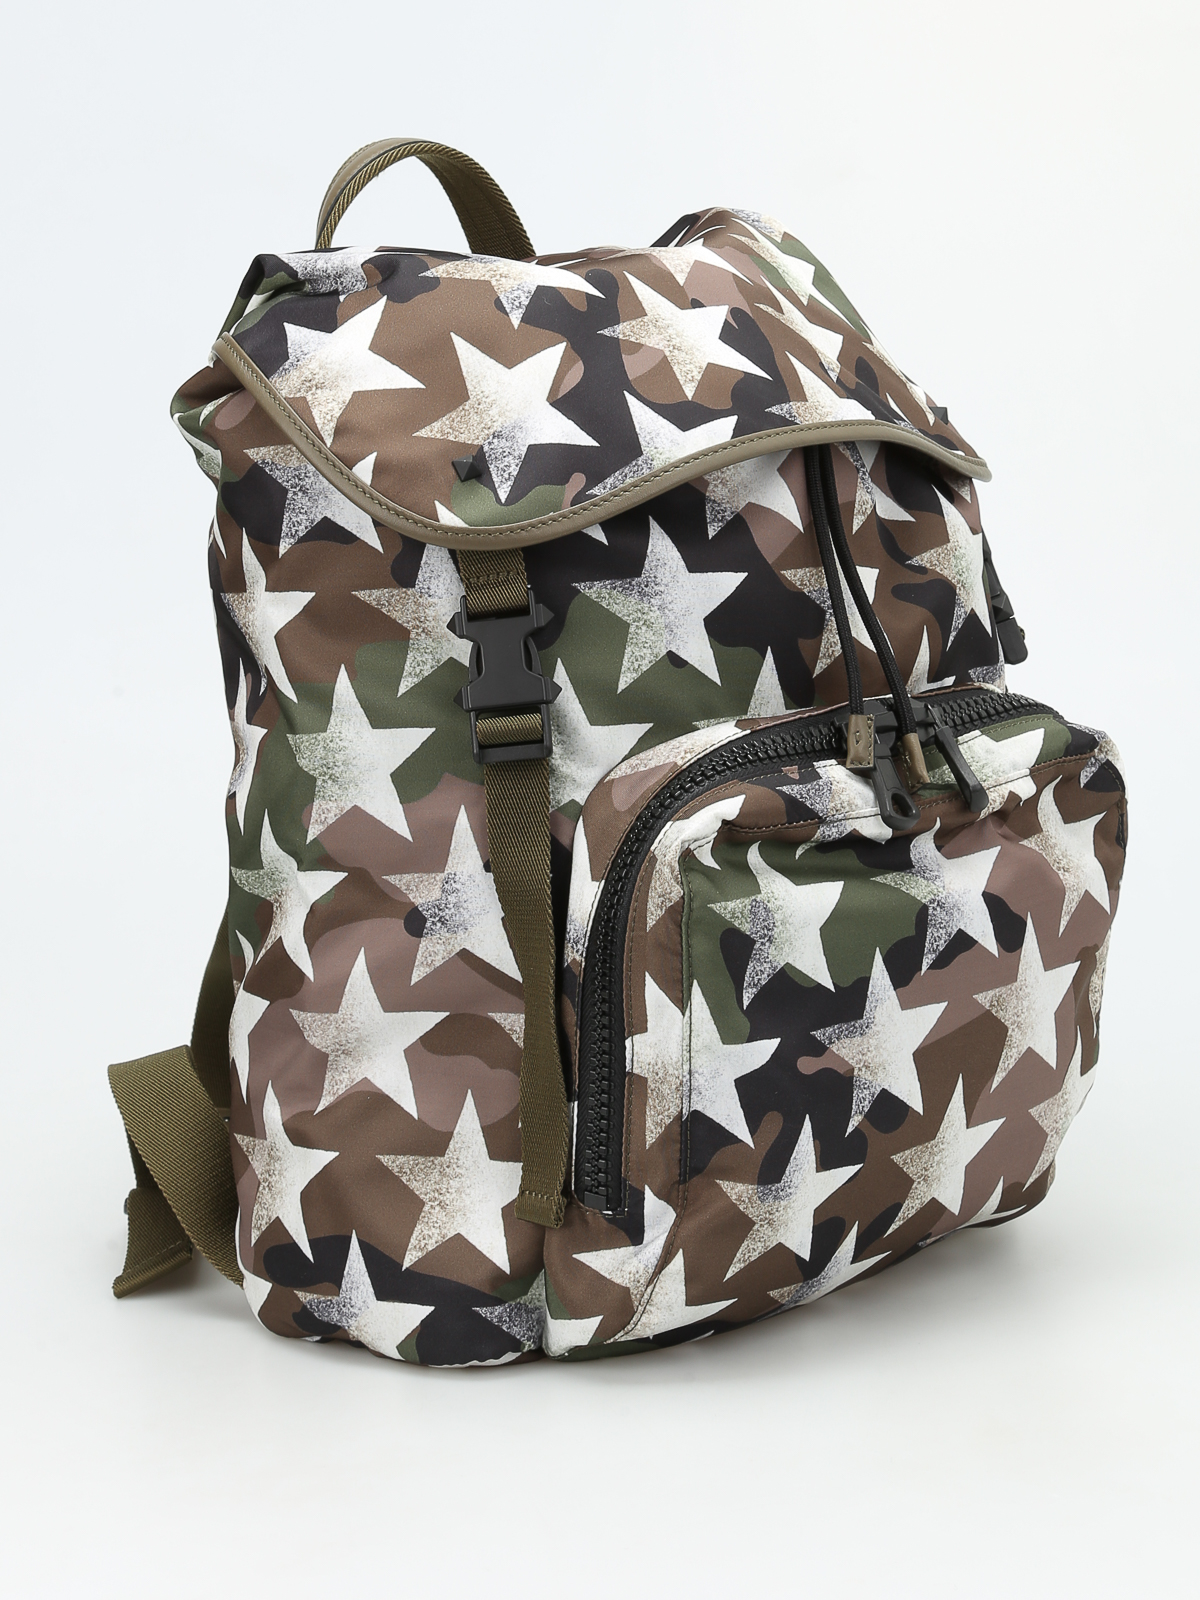 VALENTINO GARAVANI Nylon Camouflage Print Backpack Green White